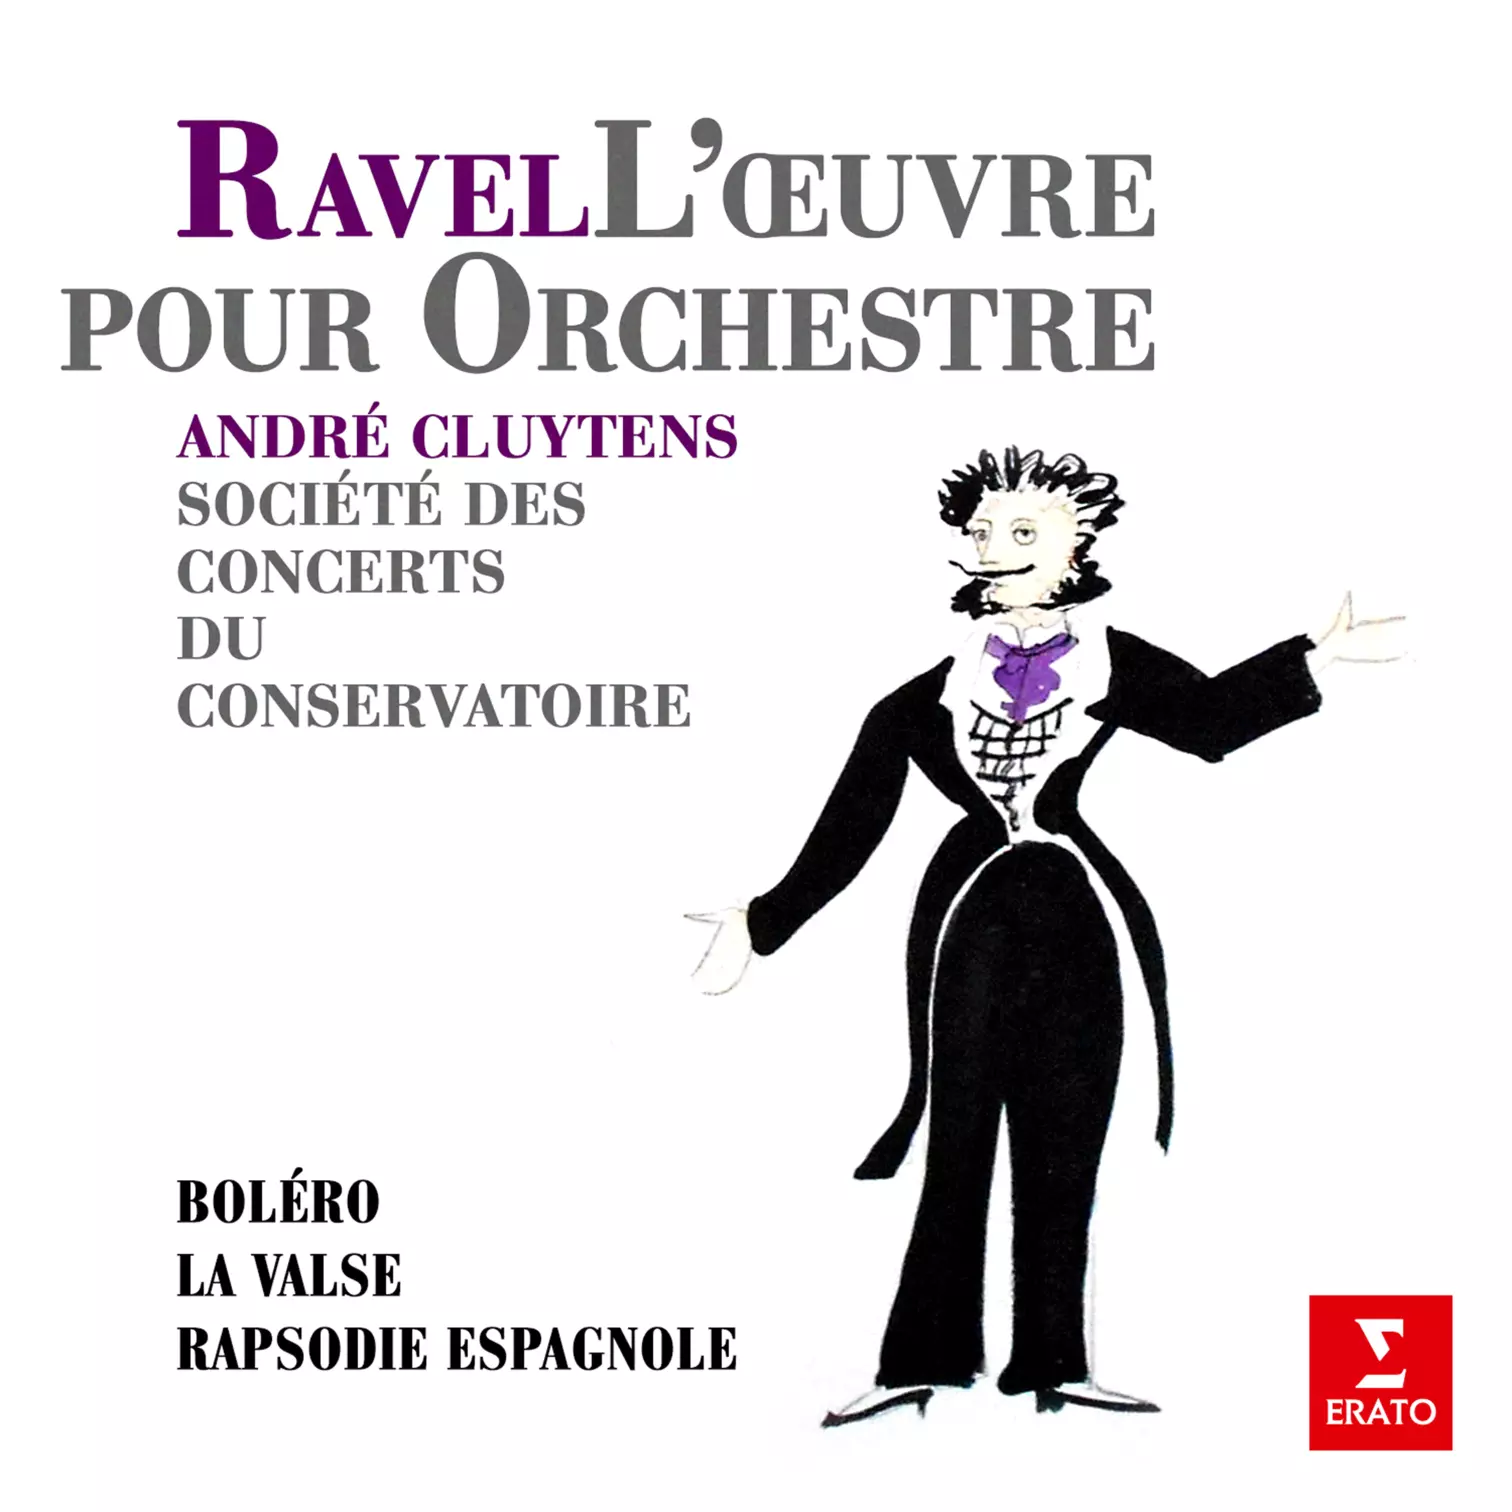 Ravel: Boléro, La valse & Rapsodie espagnole